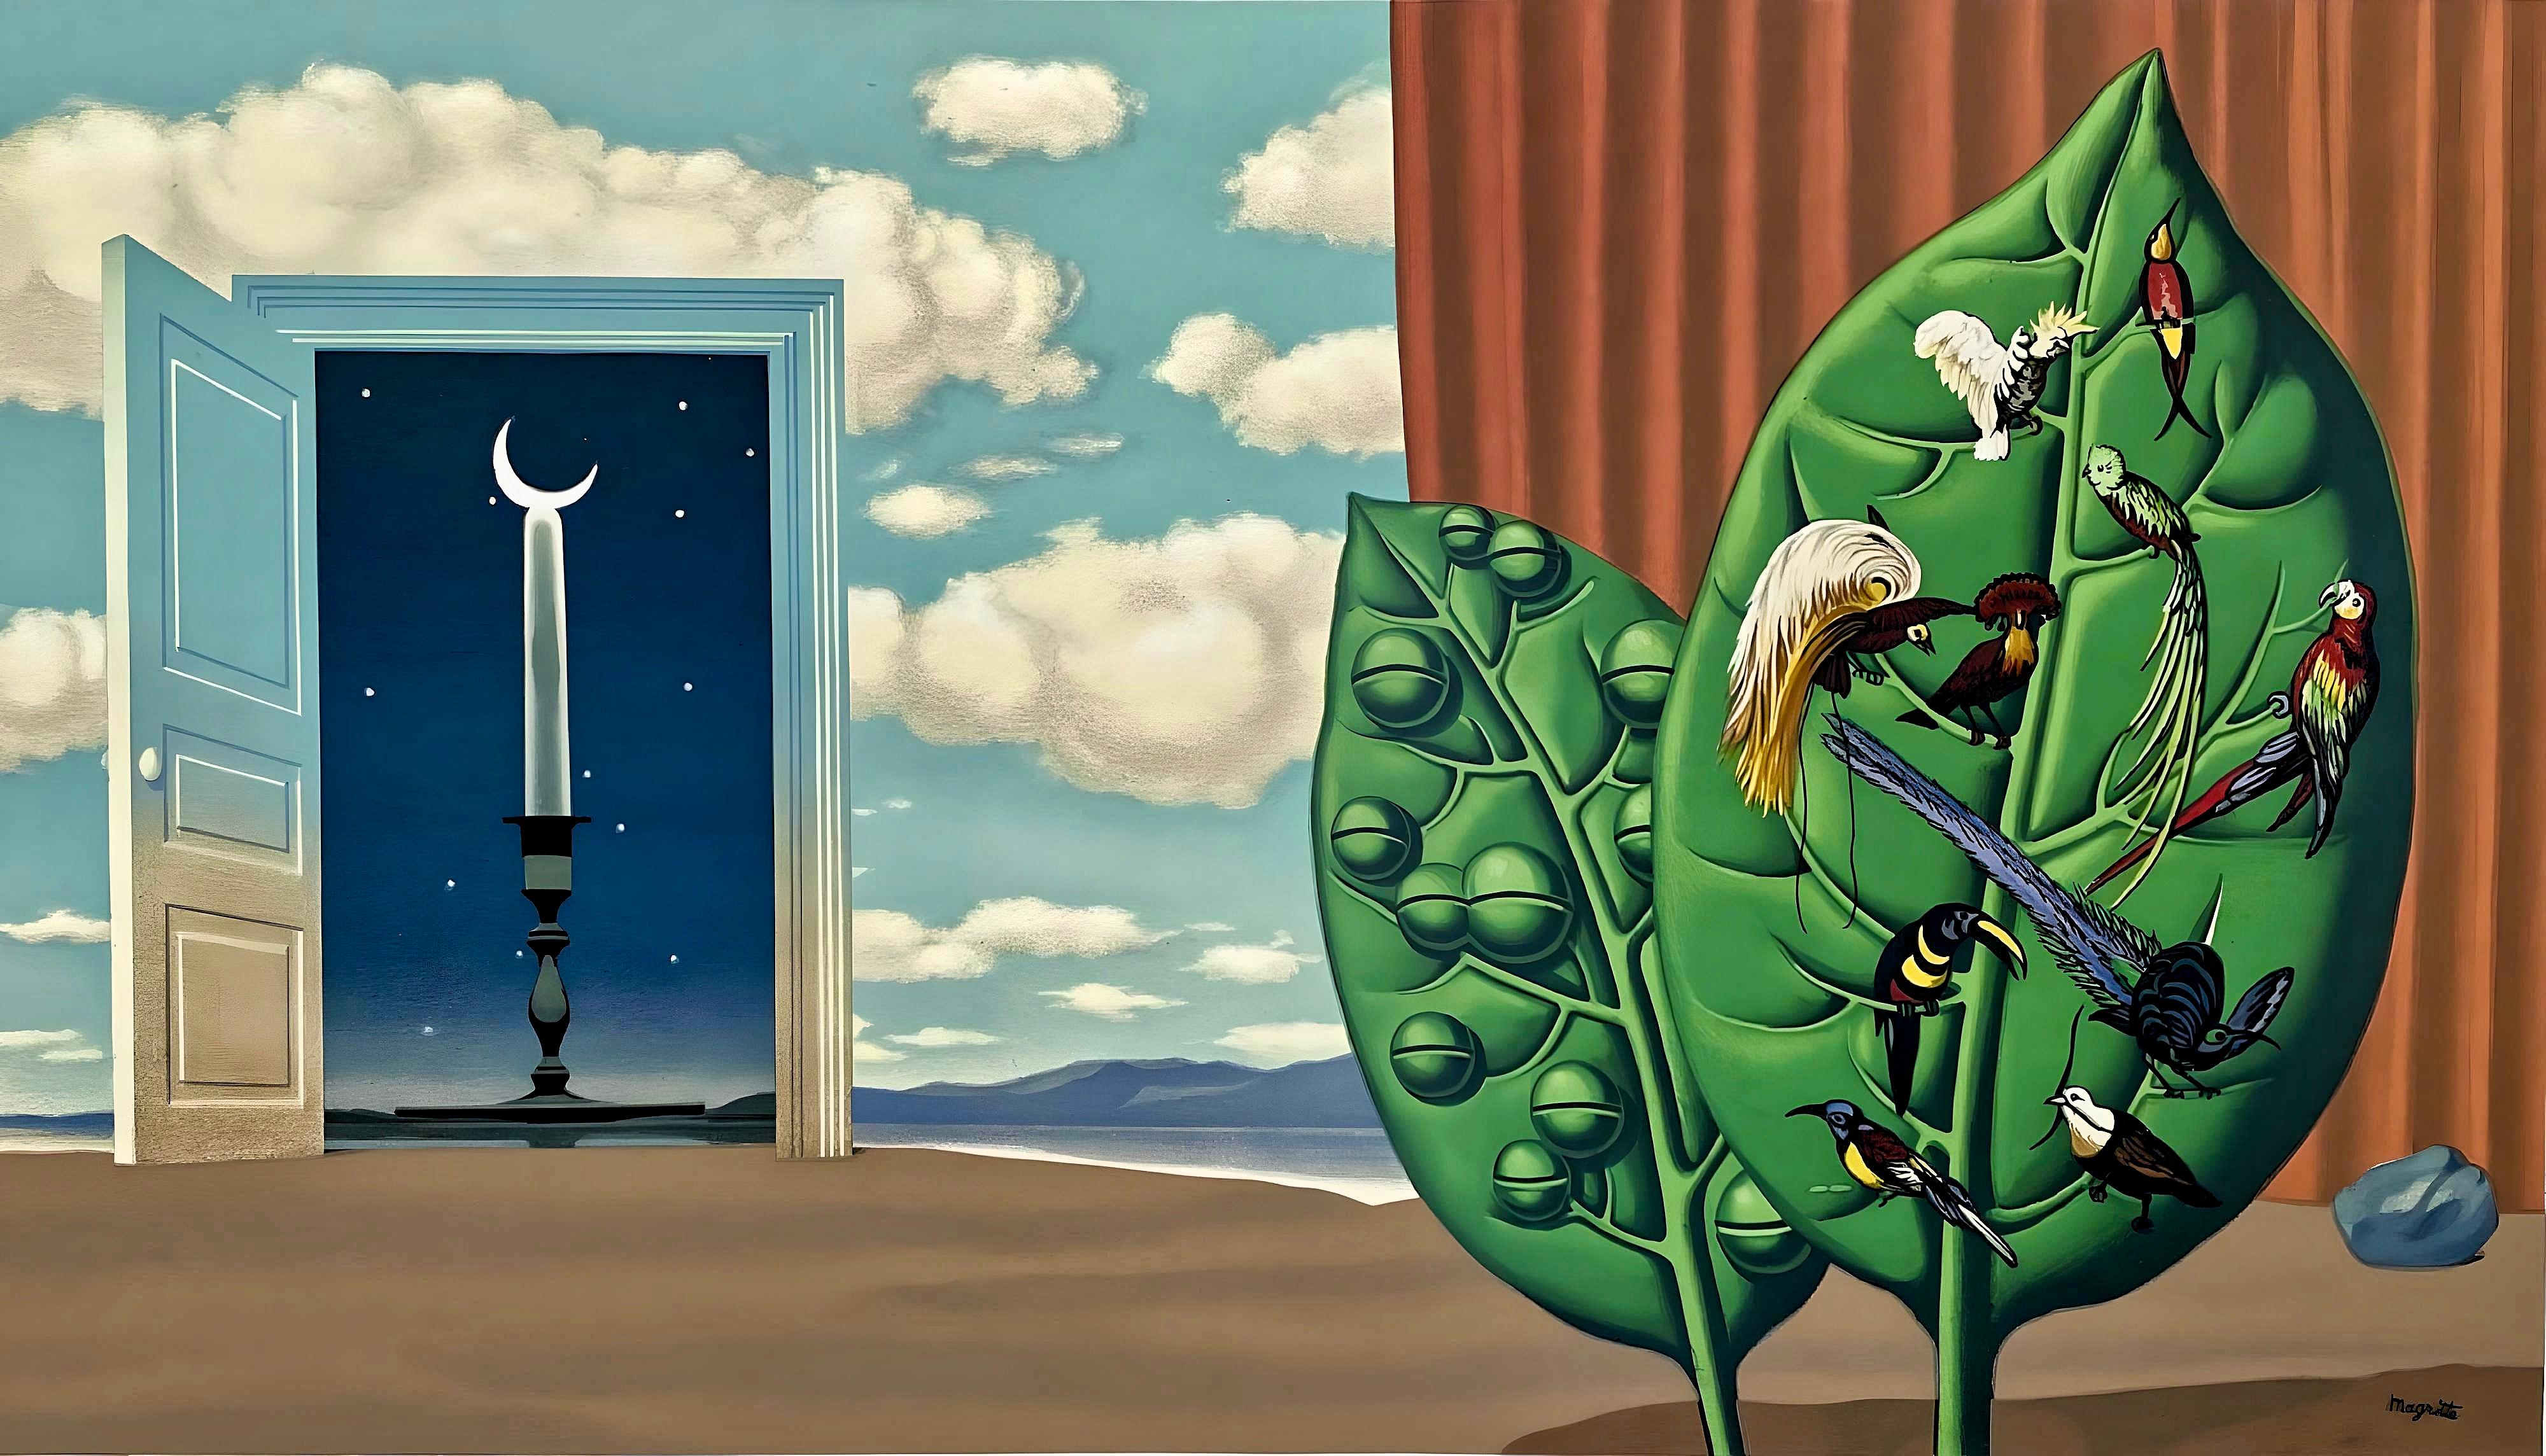 Magritte, Une Porte s'ouvre sur la Nuit Veloutée, extrait de Les Enfants (d'après)